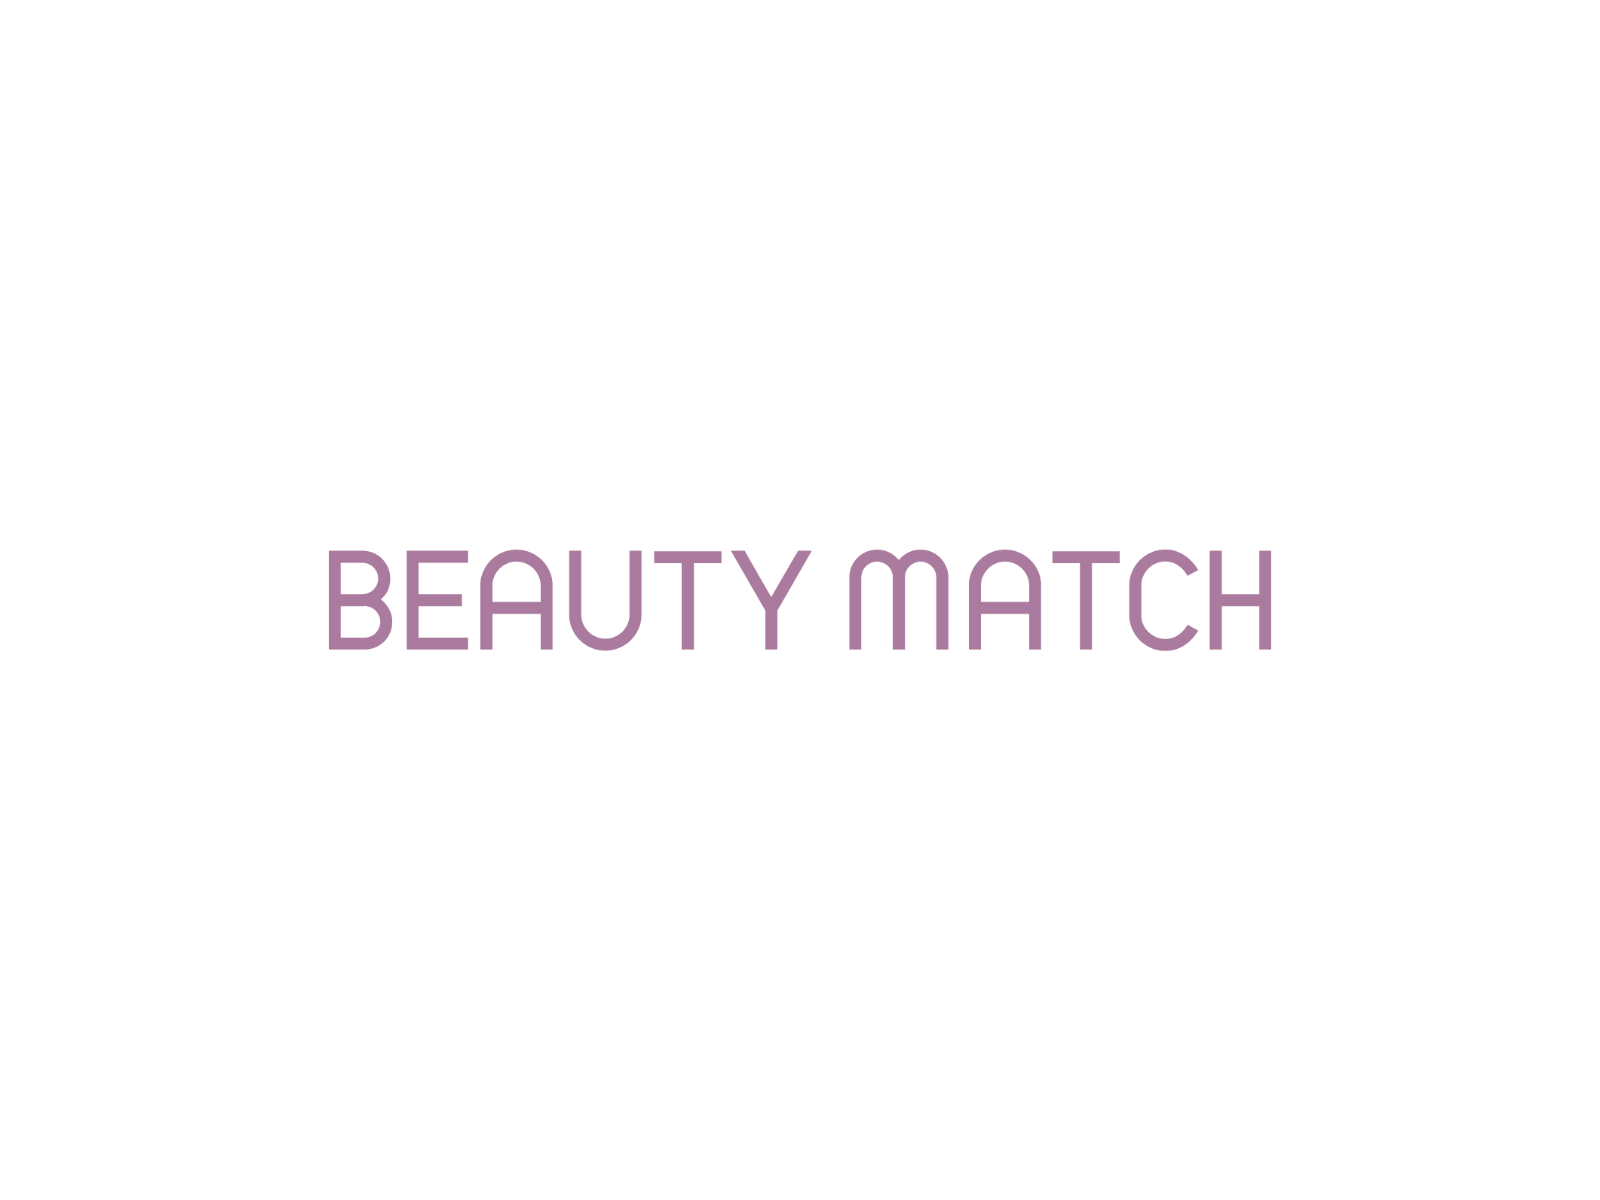 美容に特化したマッチングアプリ『BEAUTY MATCH』をリリースいたしました。